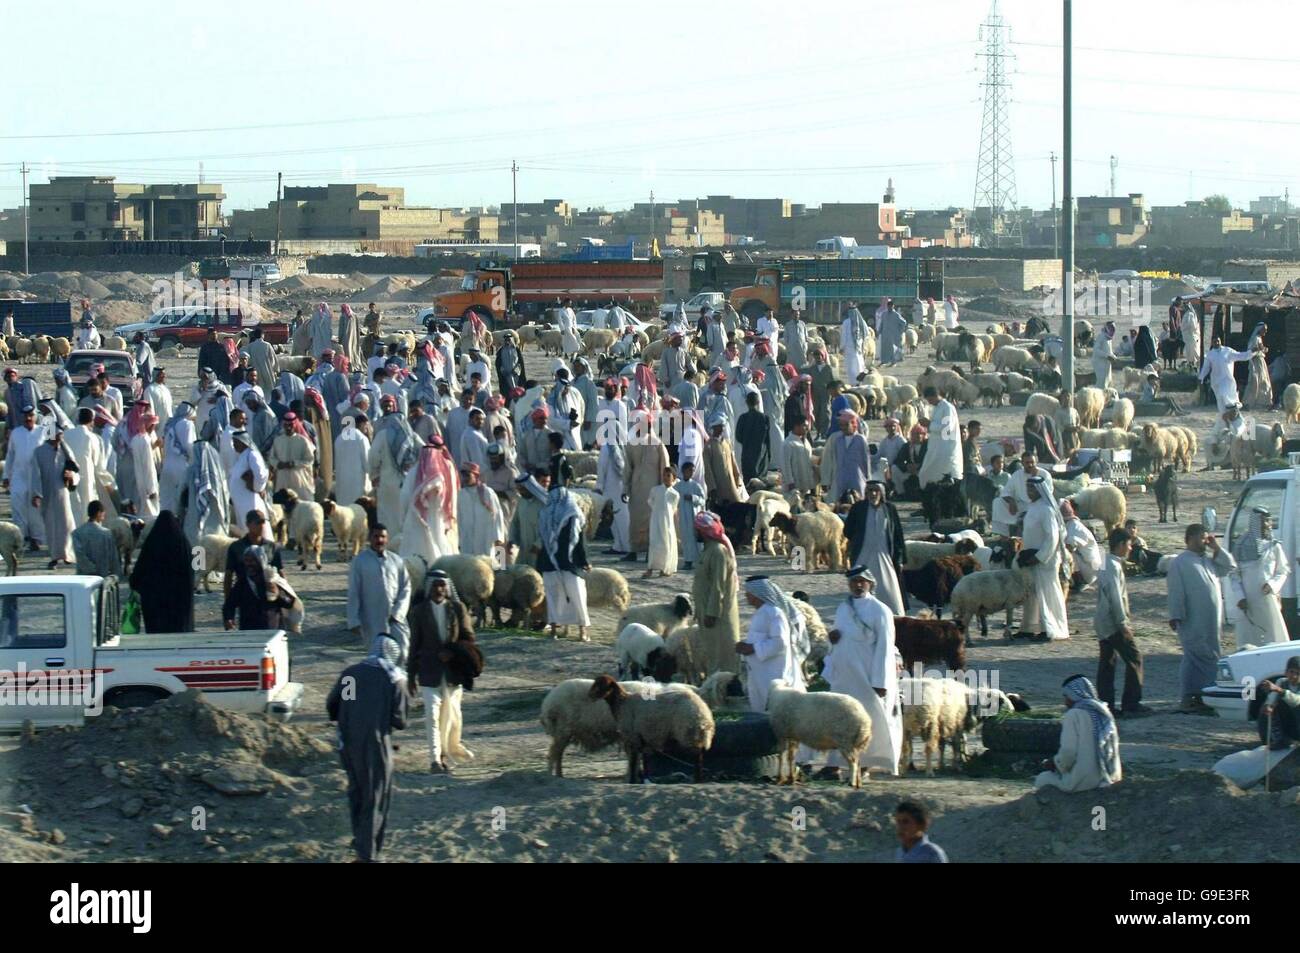 La vie normale est revenu à certaines régions de l'Iraq et dans la ville de Samawa comme la capitale de la province d'Al Muthanna, où le marché ovin local est de nouveau en plein essor. Banque D'Images